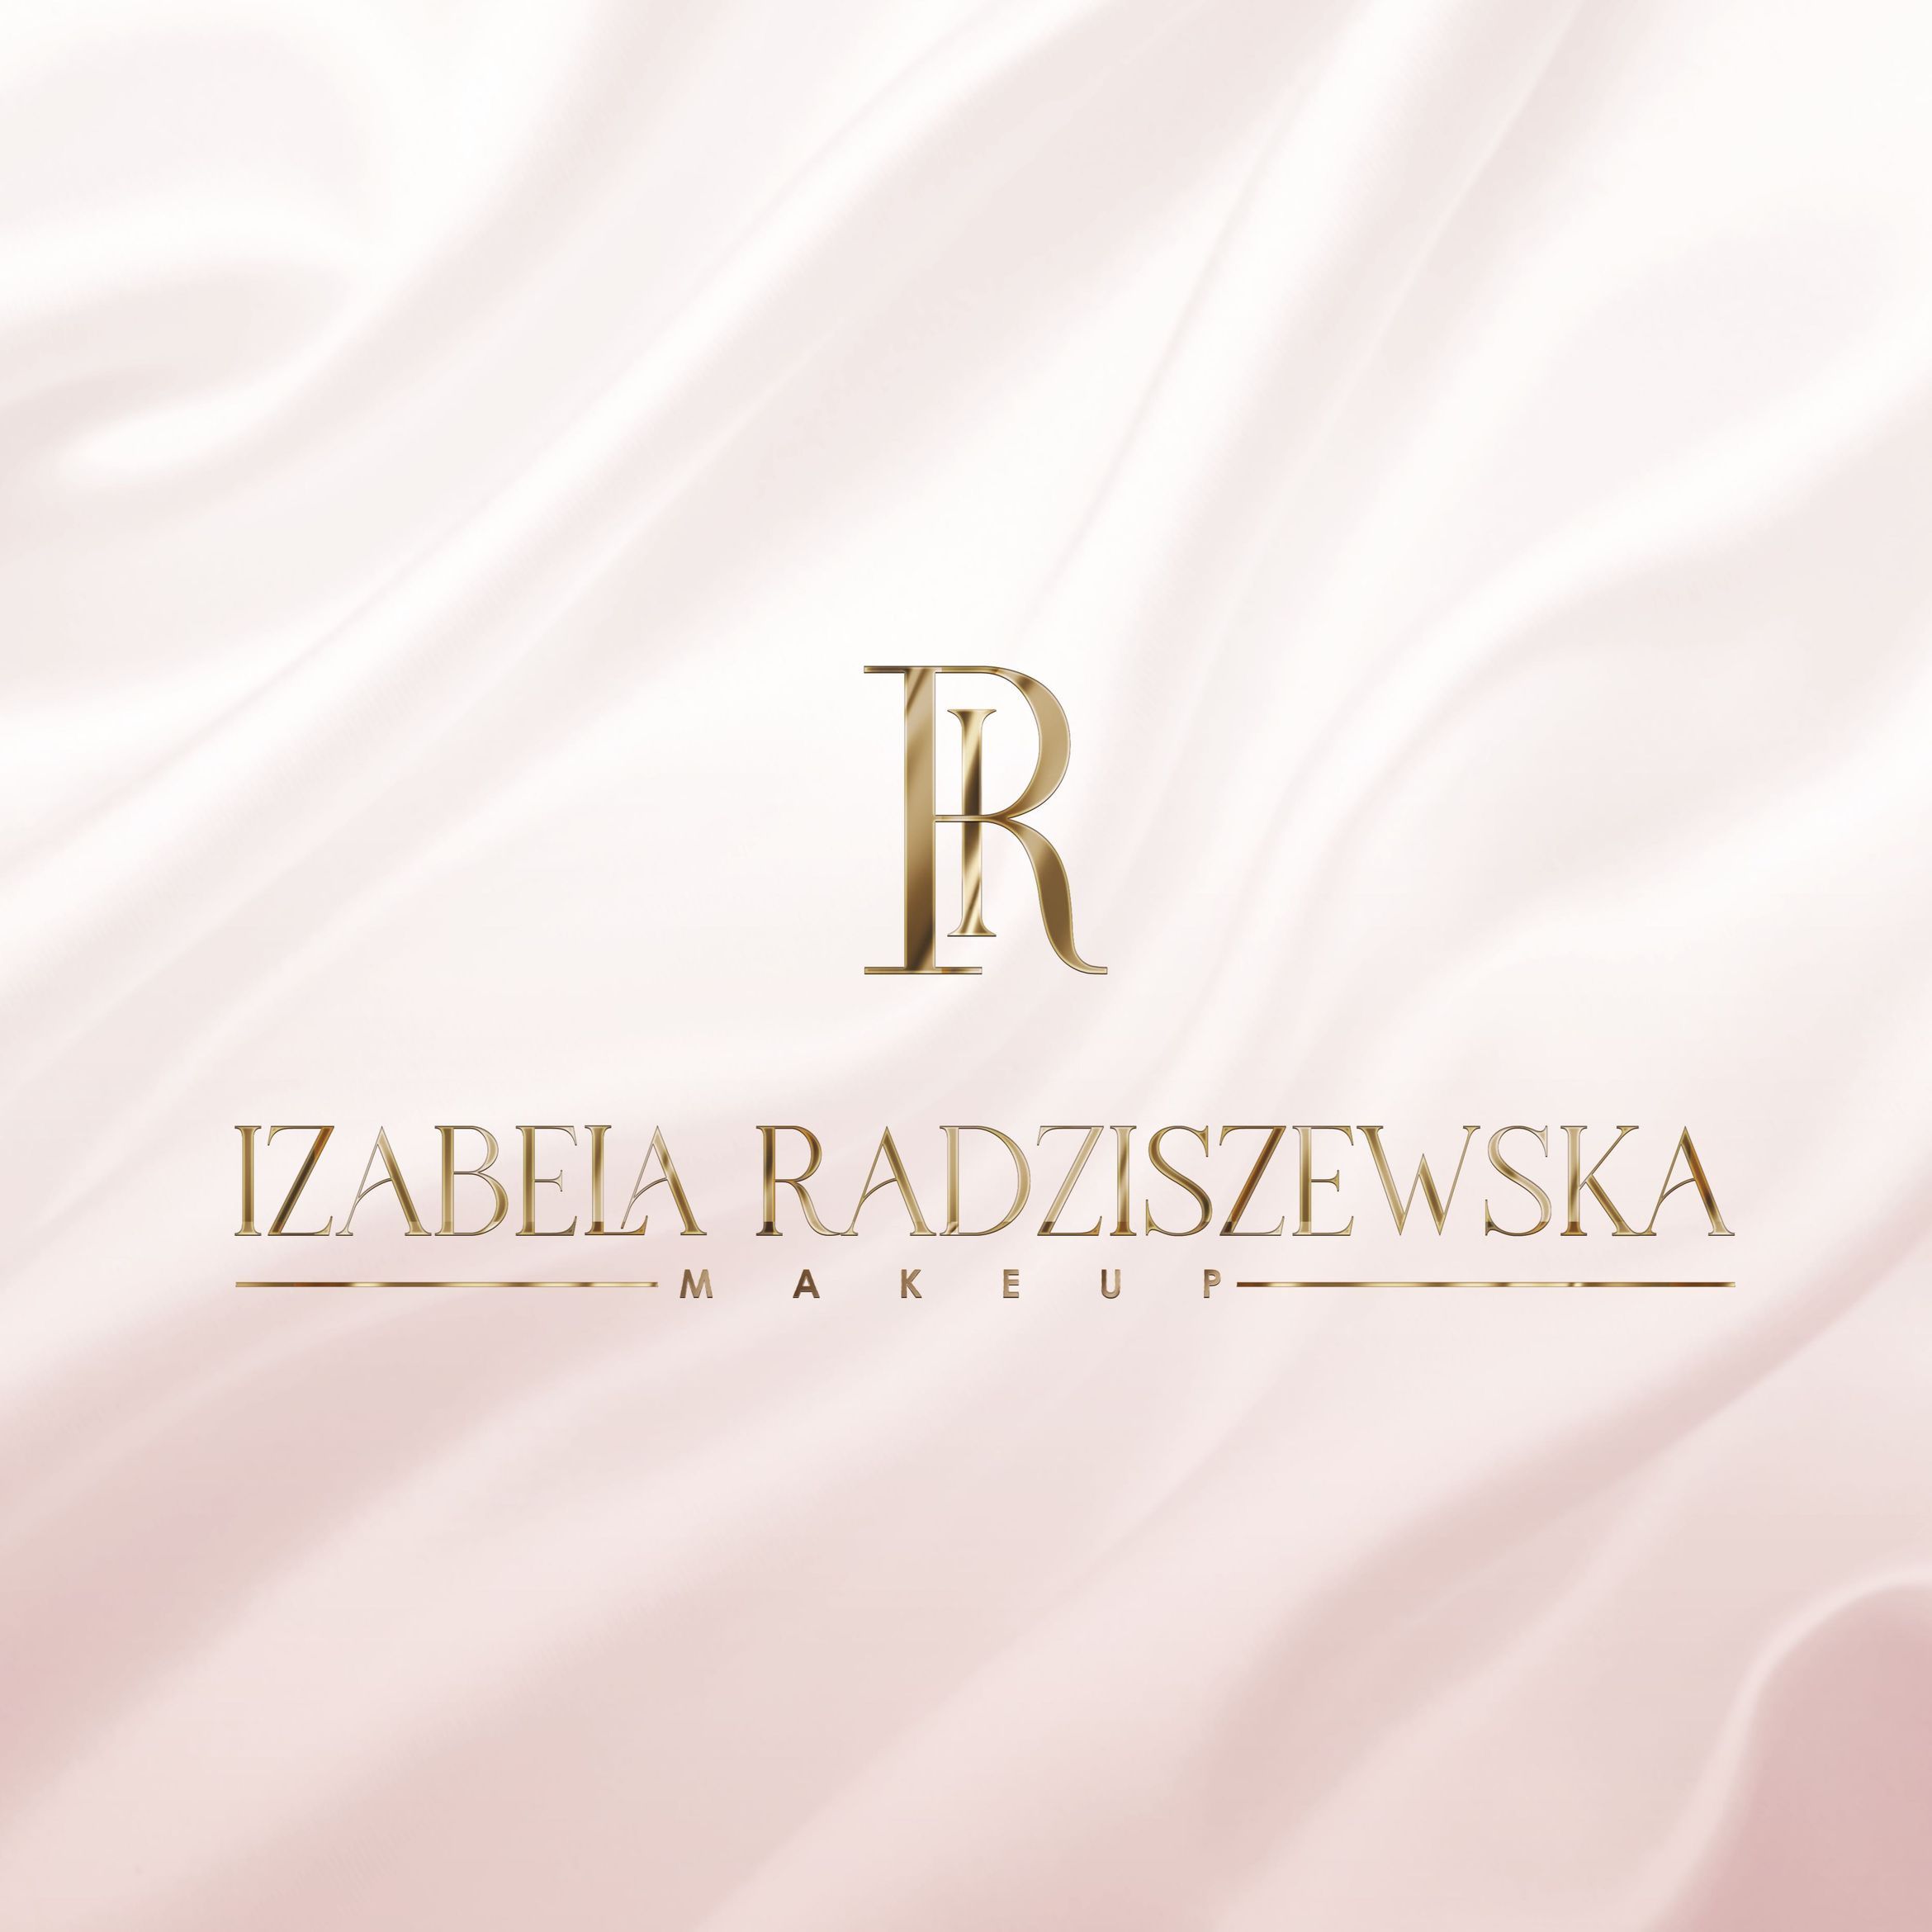 Izabela Radziszewska Makeup, Juraty 6B, 1, 80-299, Gdańsk